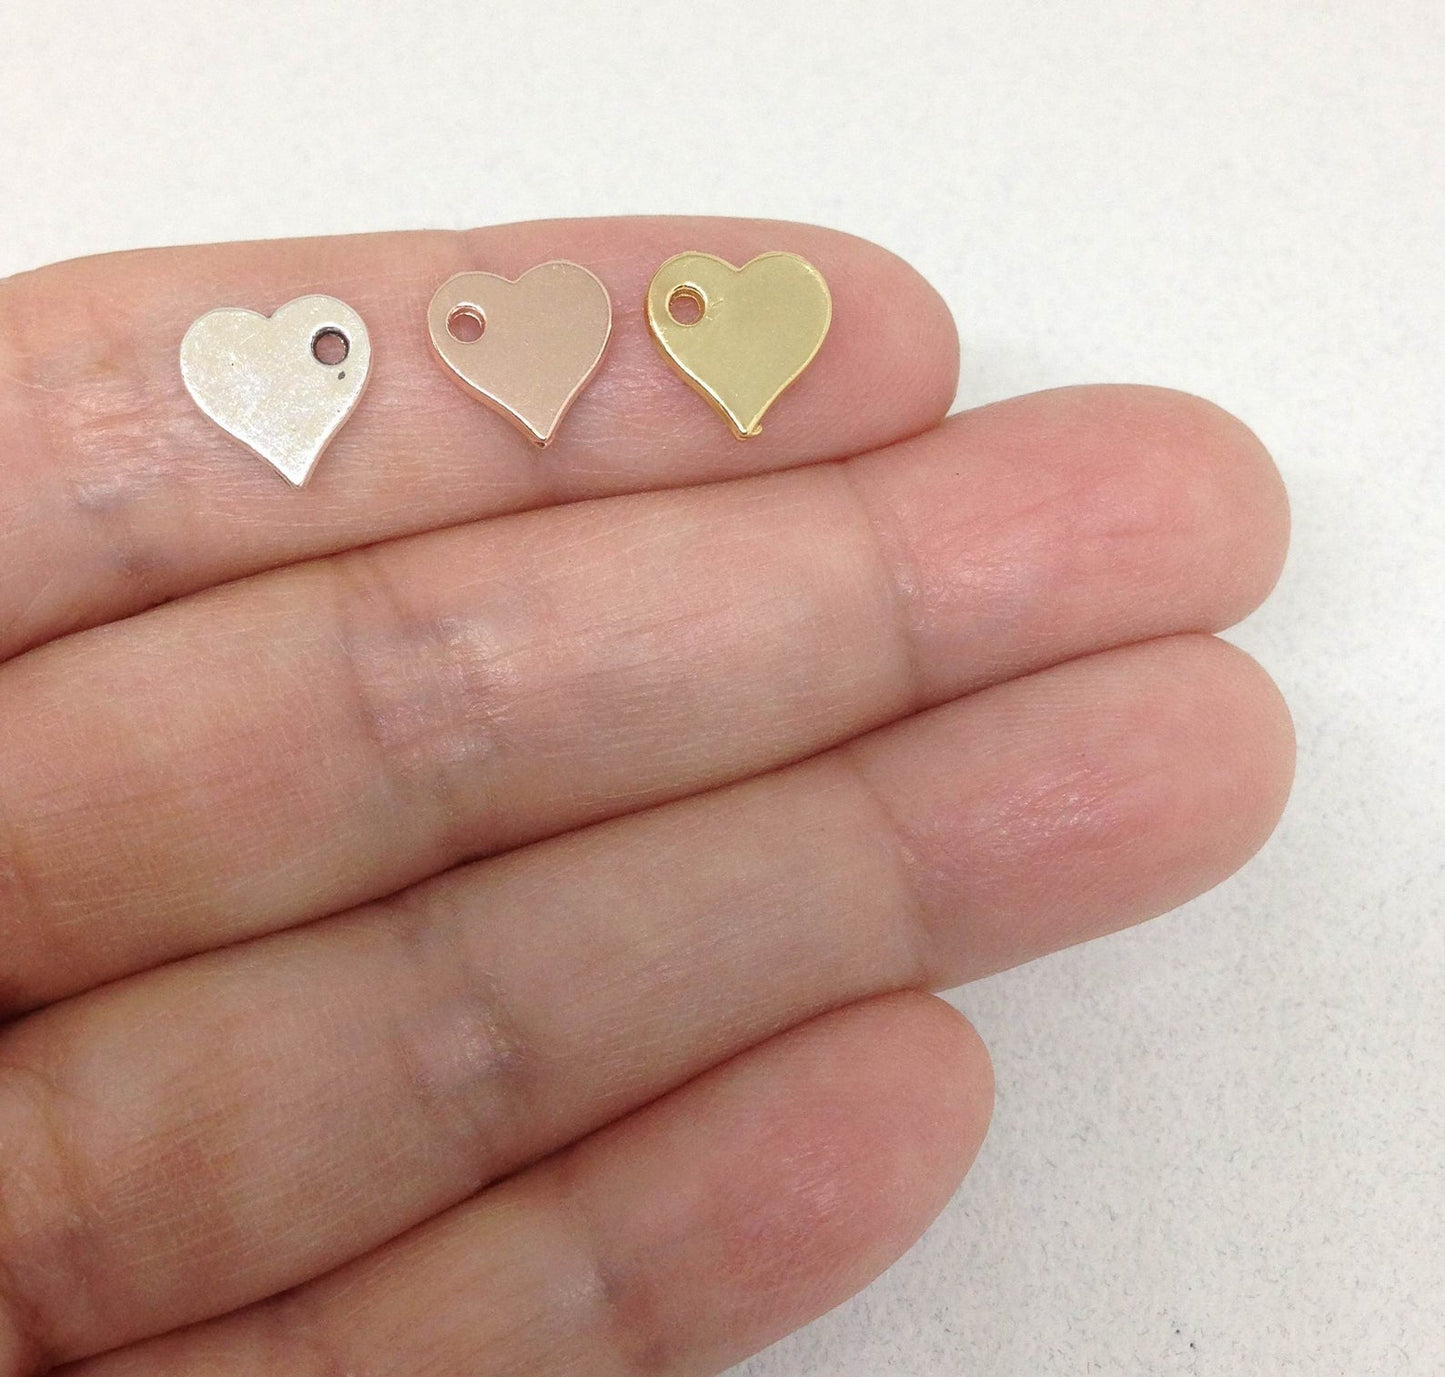 5 Tiny Heart Charms